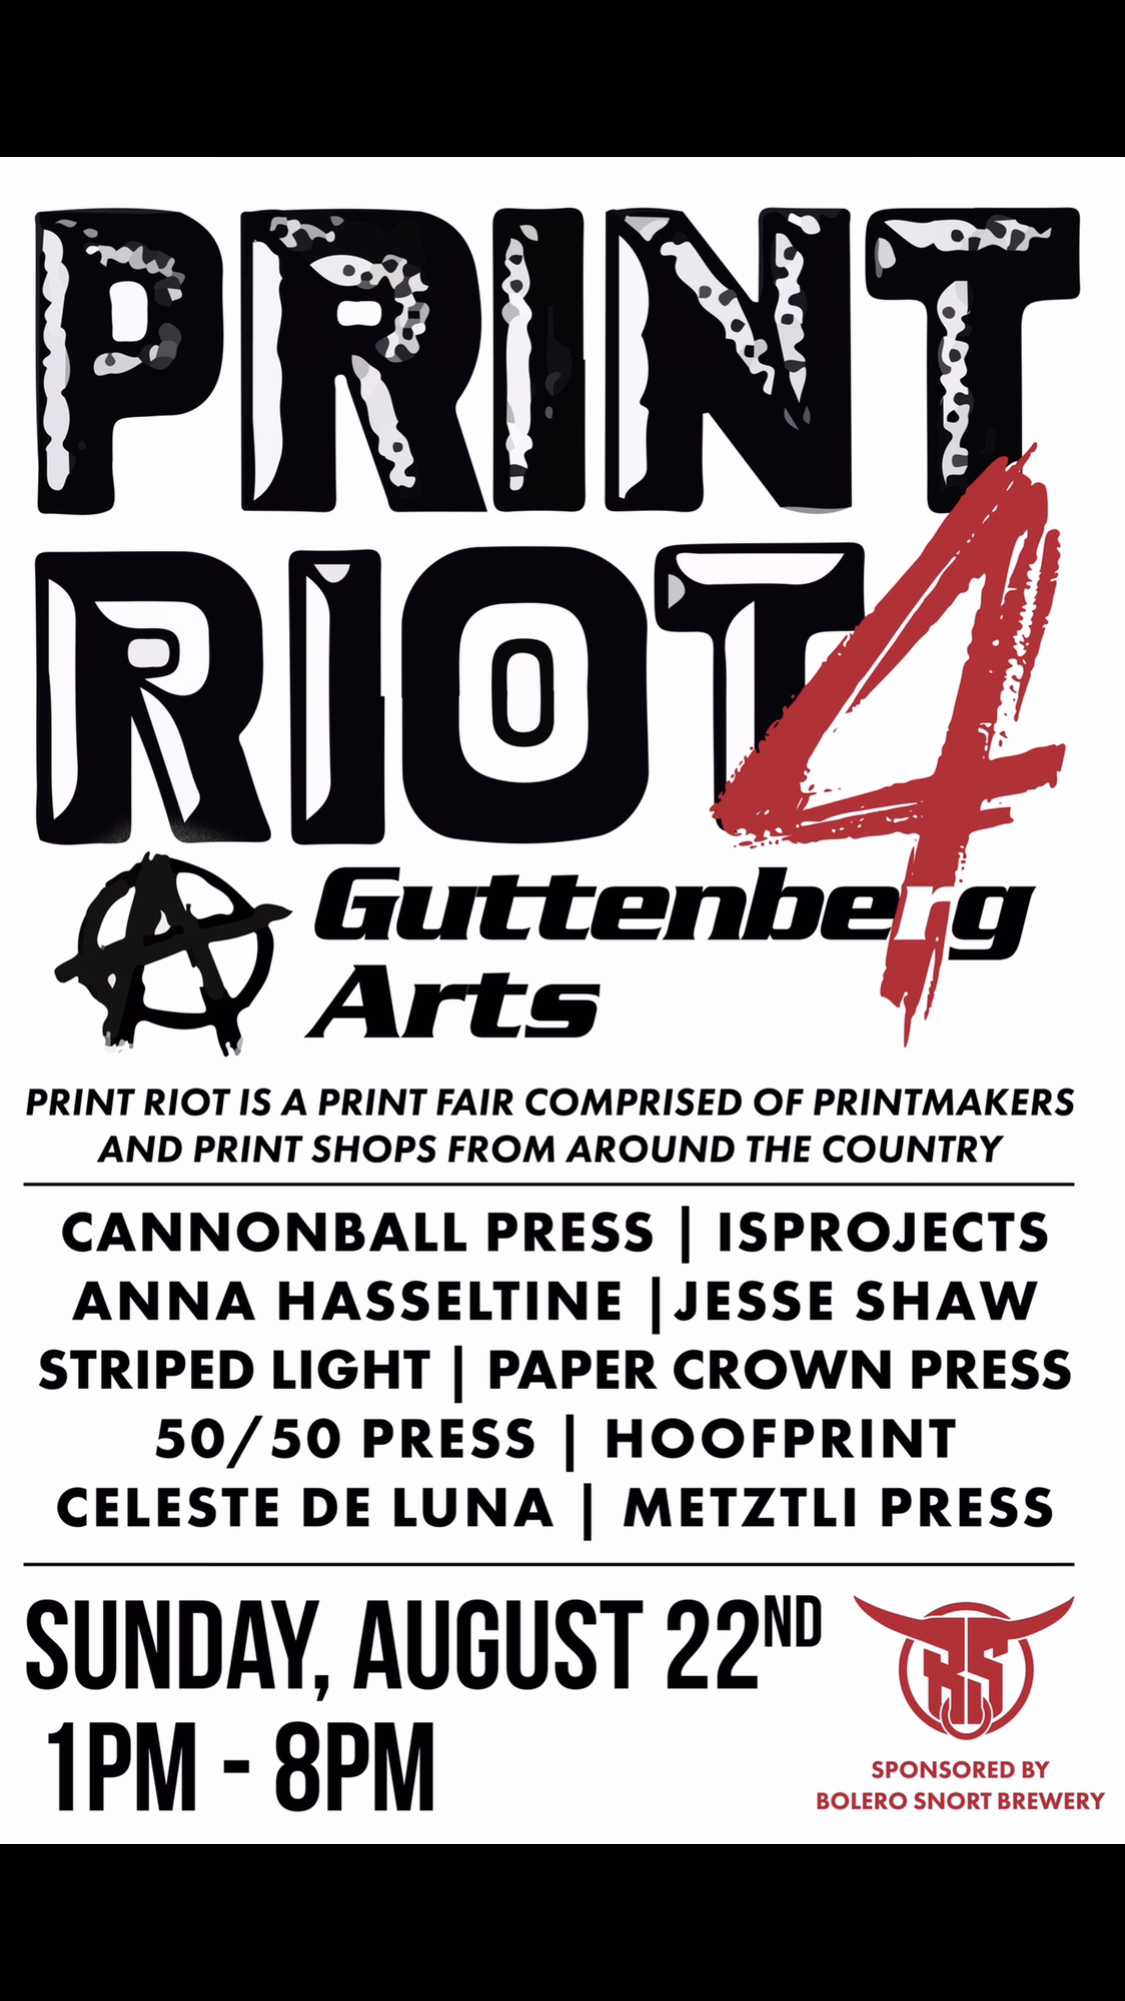 Print riot